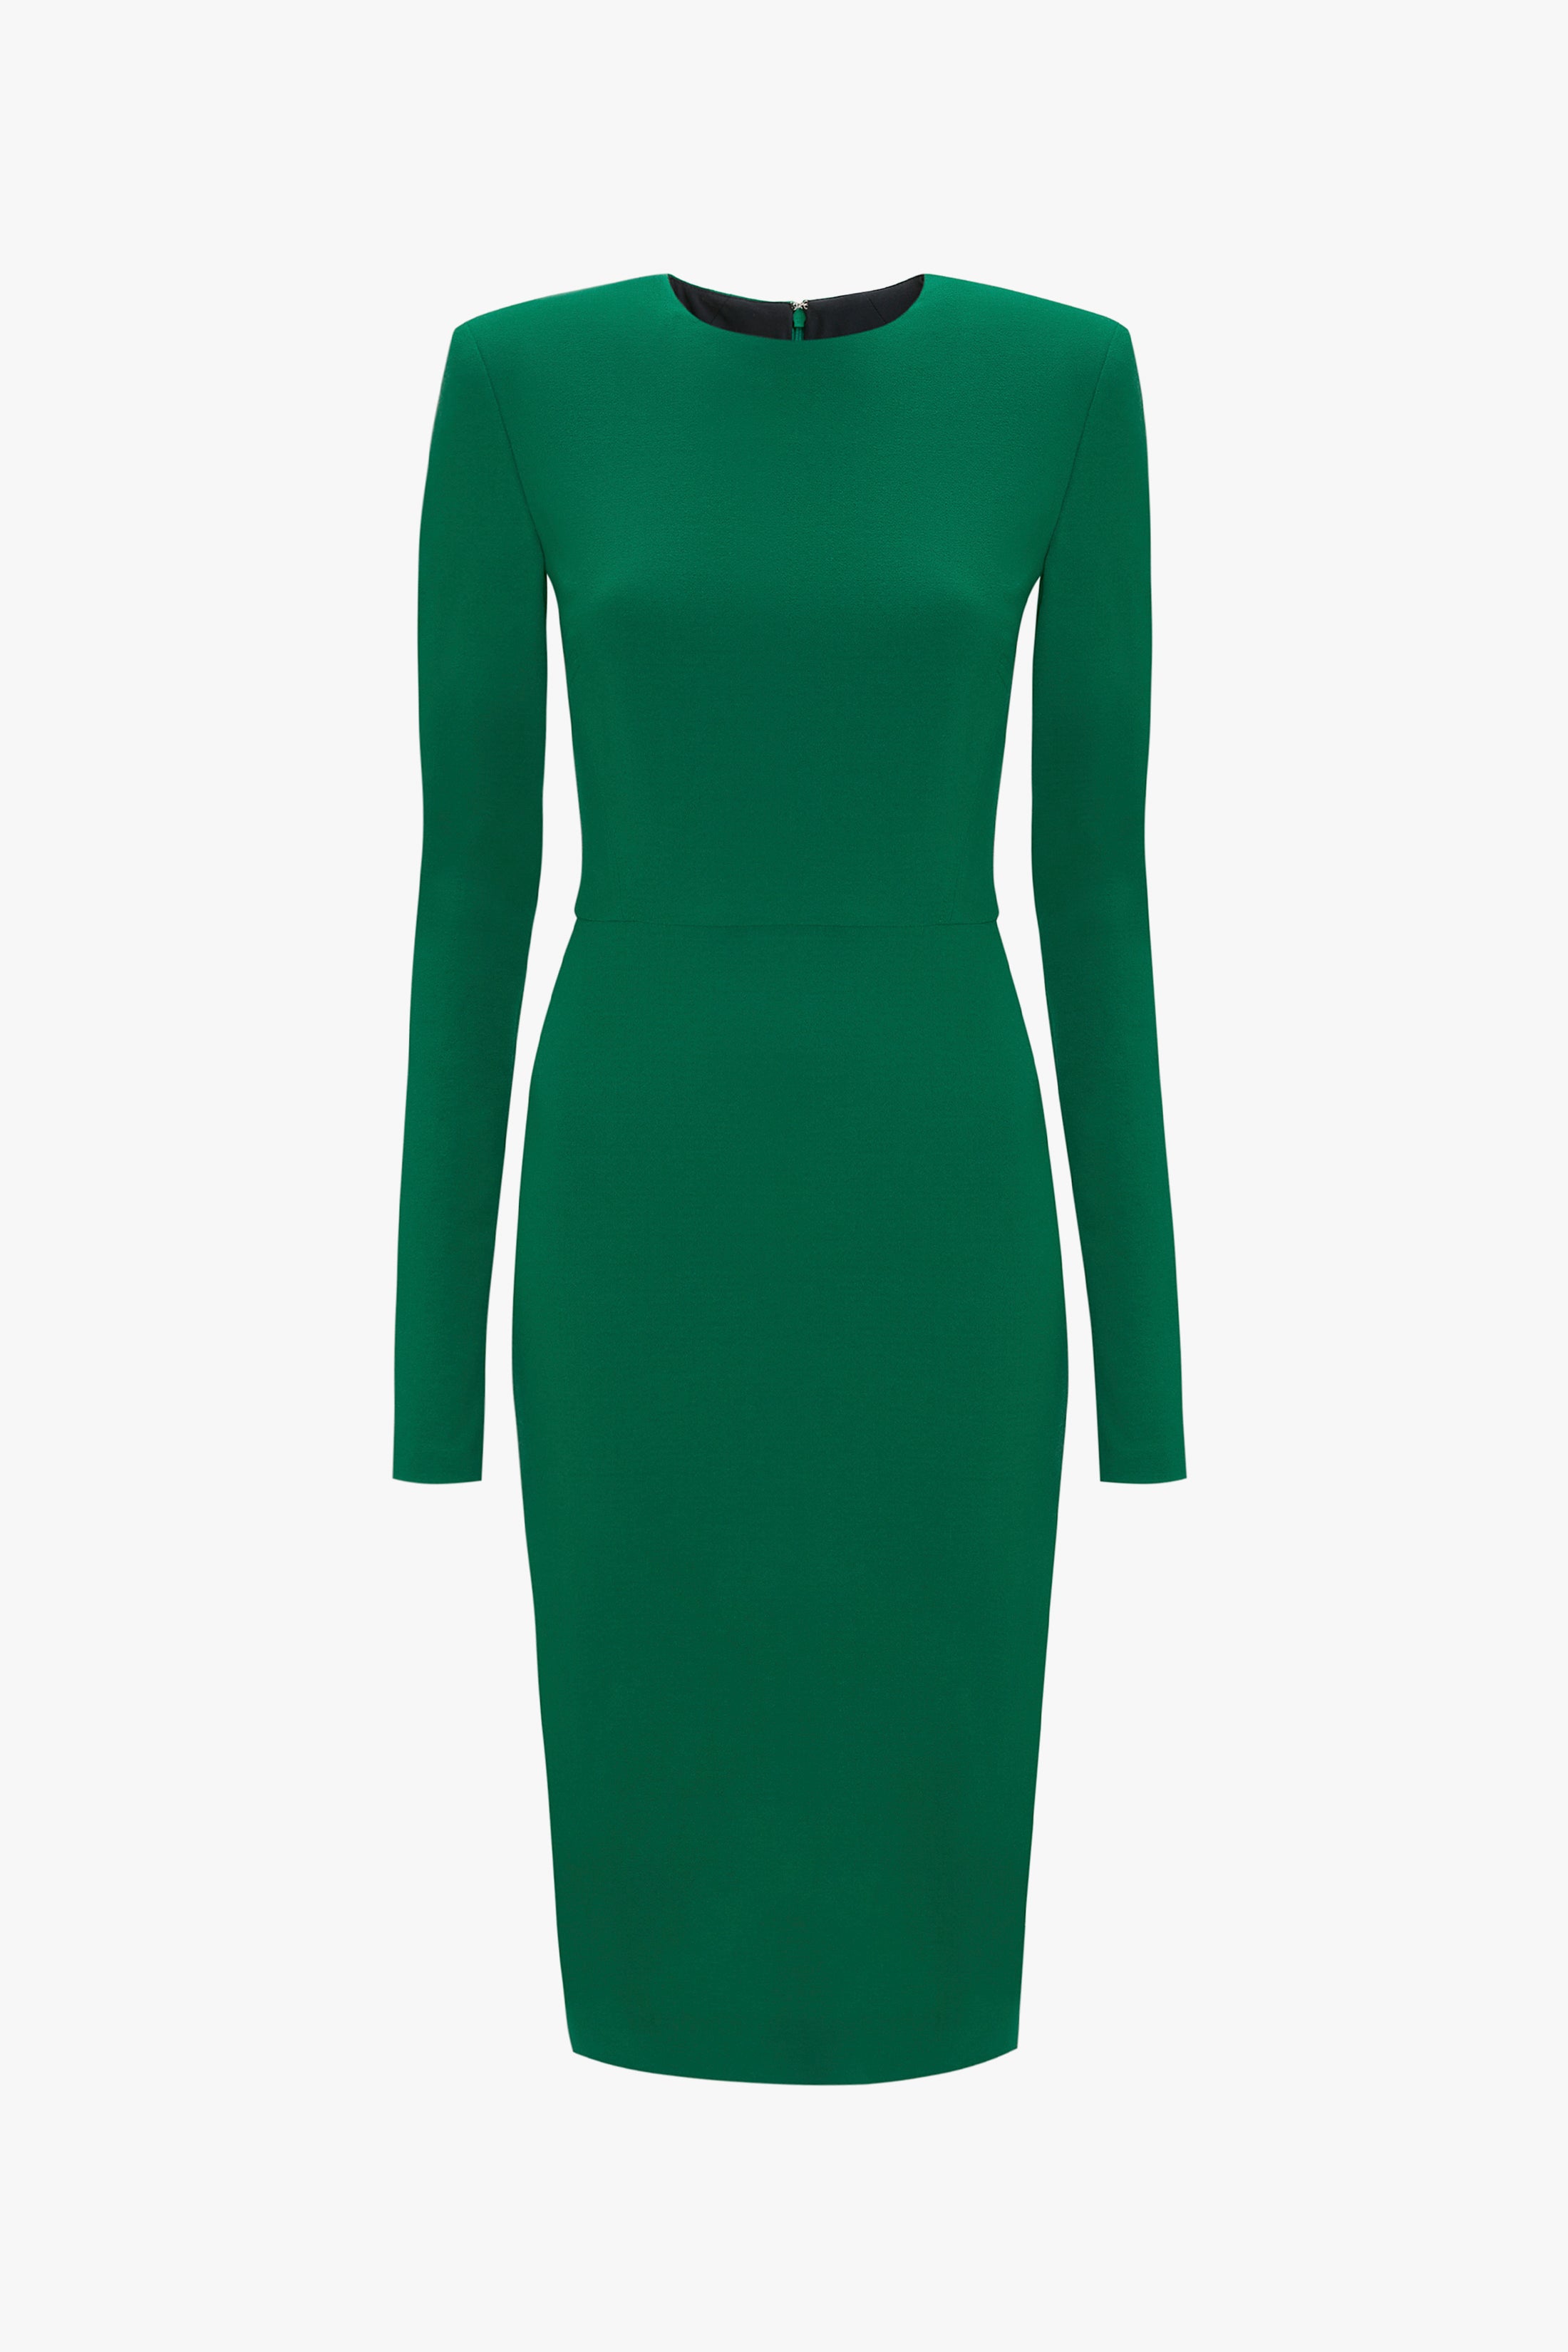 Promise of Forever Emerald Velvet Column Maxi Dress